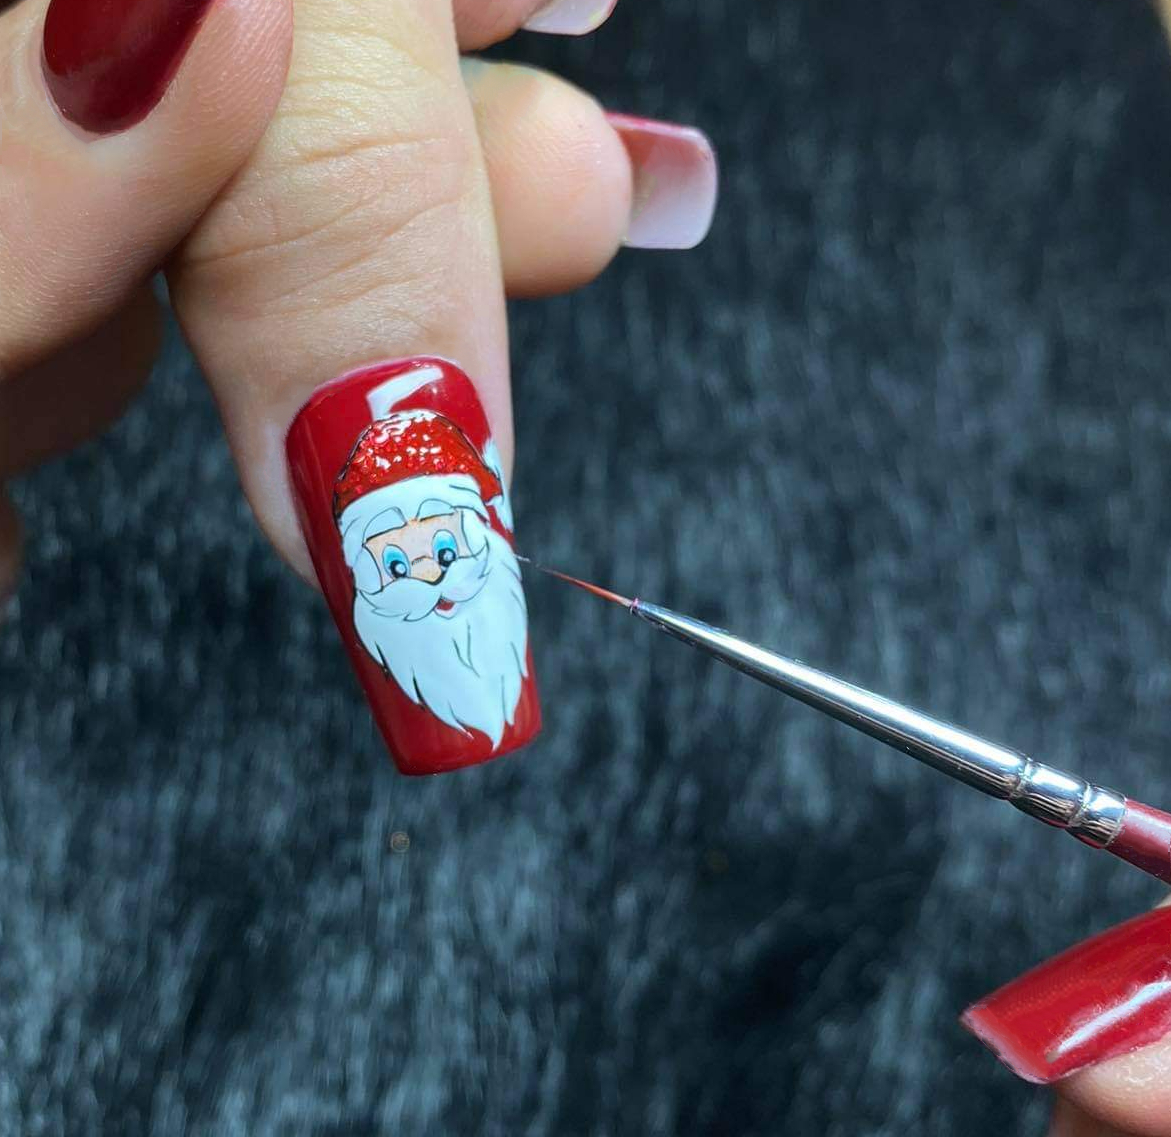 Vẽ Noel Nail: Để tạo nên những bức tranh móng tay độc đáo và đẹp mắt cho mùa Noel, đôi tay tài hoa của những nghệ sĩ vẽ nail đã tạo ra rất nhiều ý tưởng sáng tạo. Hãy vào xem ngay để tìm được món quà ý nghĩa cho bản thân!